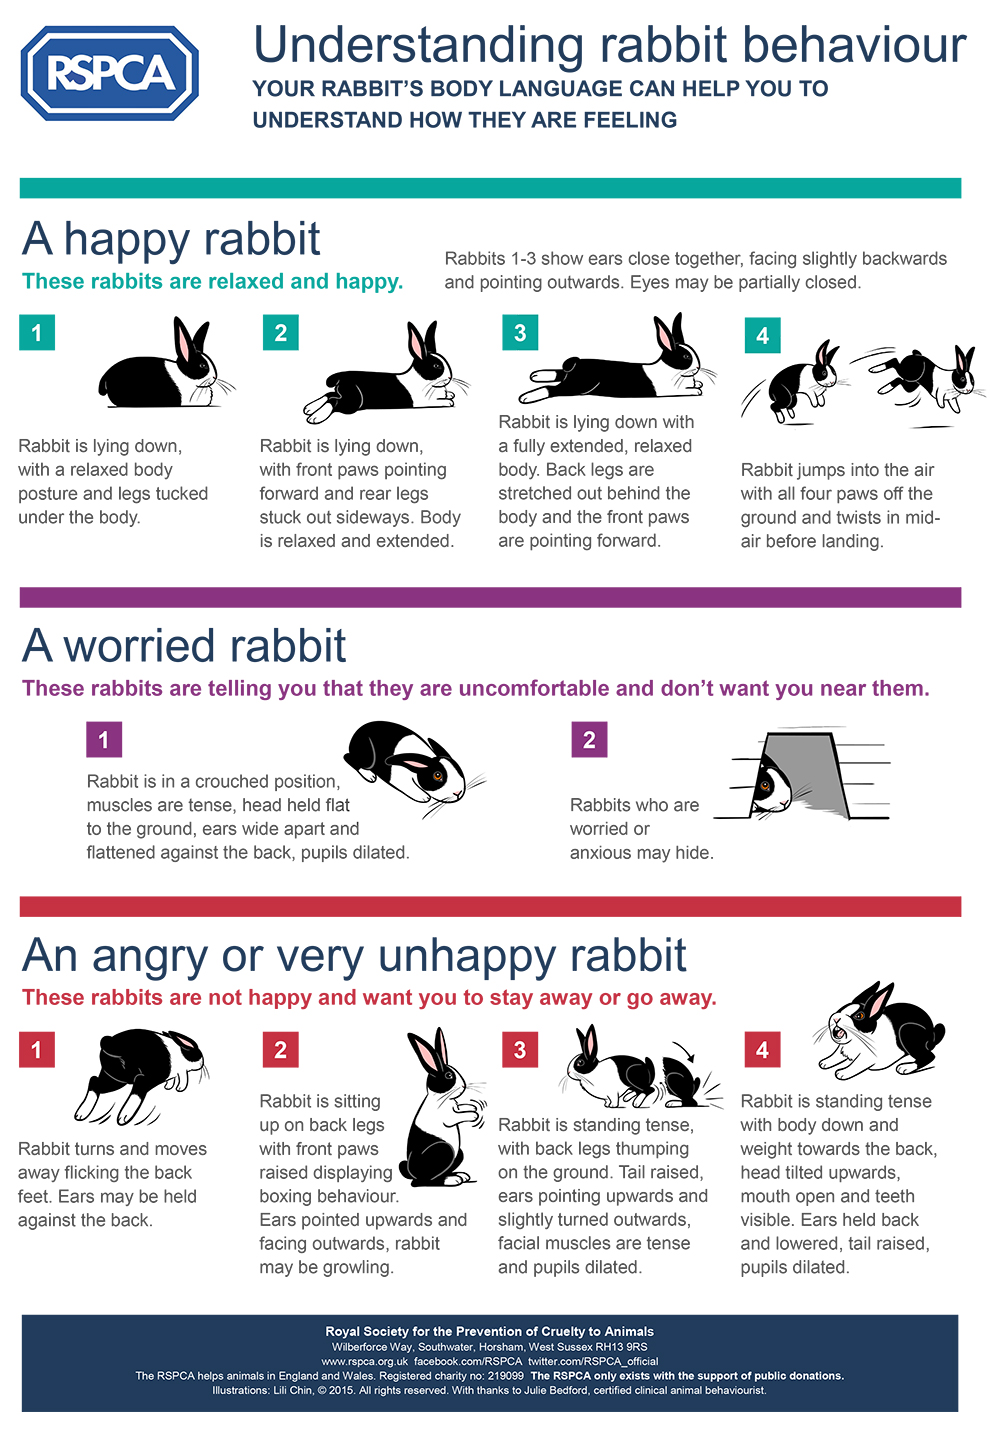 RSPCA Understanding Rabbit Behaviour